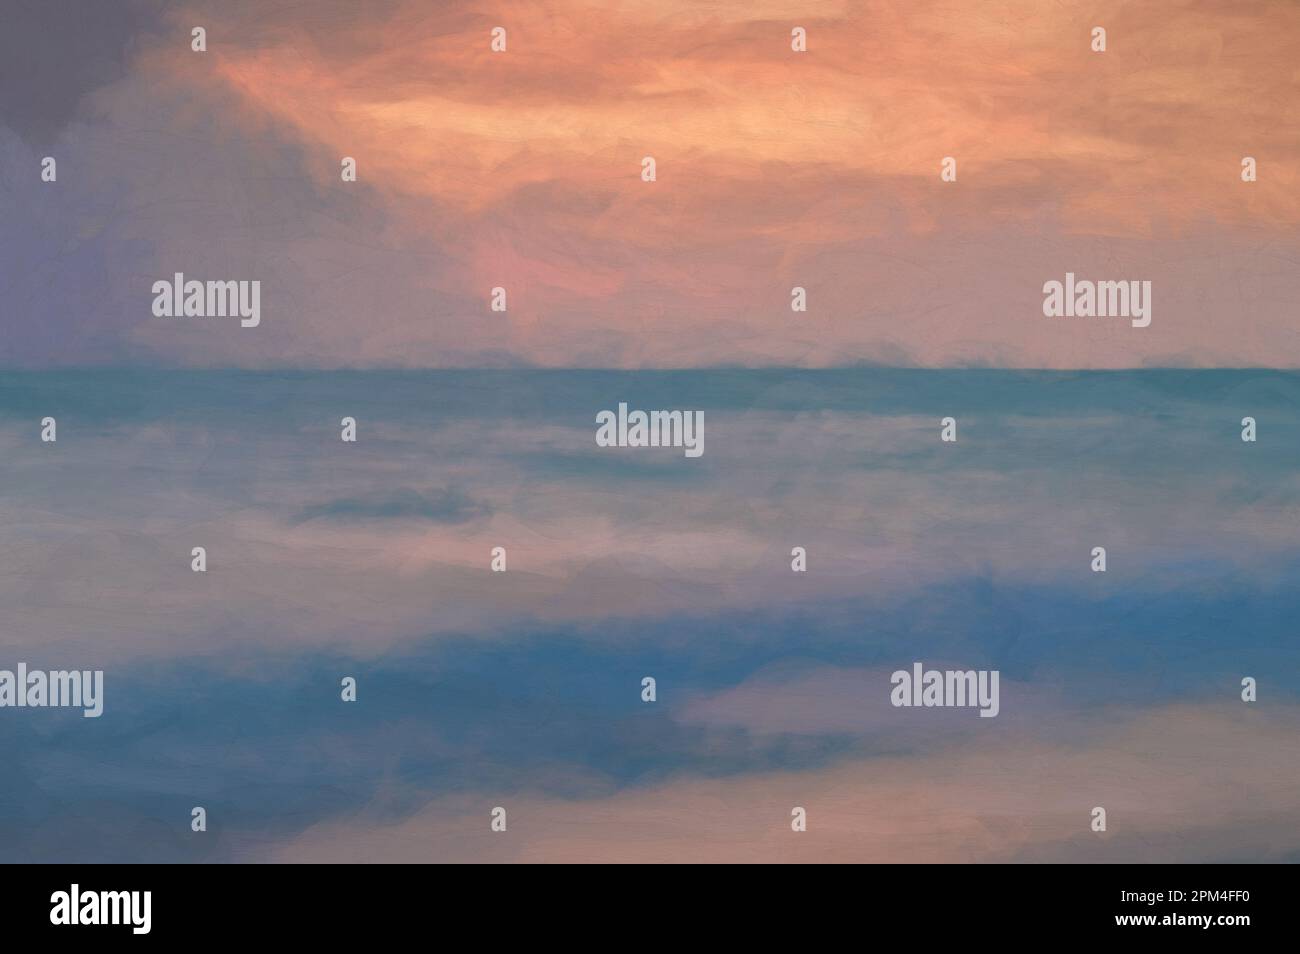 Peinture numérique d'une longue exposition de la mer à l'heure d'or, comme l'aube commence à se briser sur une plage de sable blanc. Banque D'Images